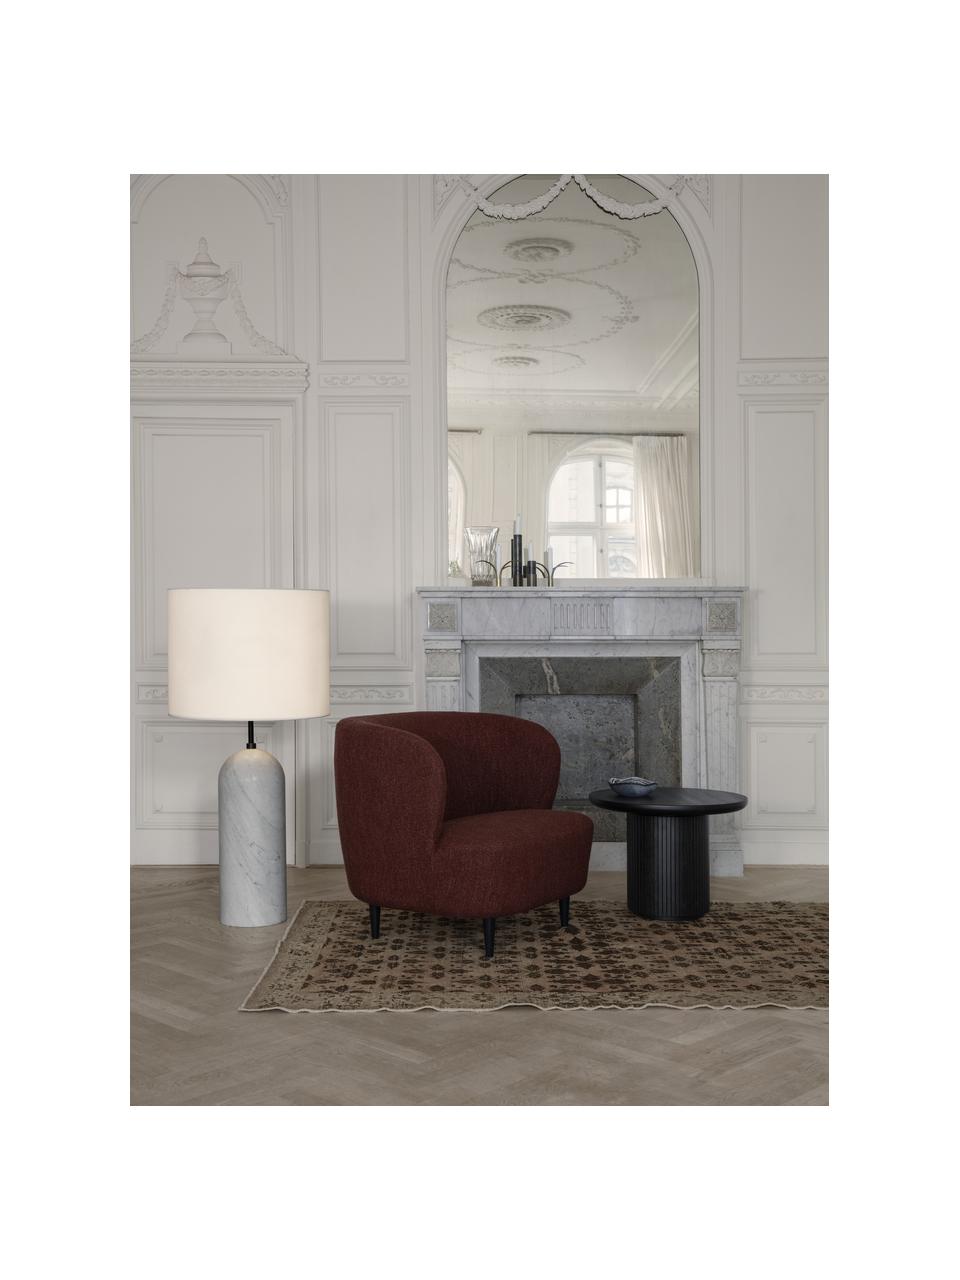 Lampa stołowa z marmuru z funkcją przyciemniania Gravity, Jasny beżowy, biały marmurowy, W 120 cm